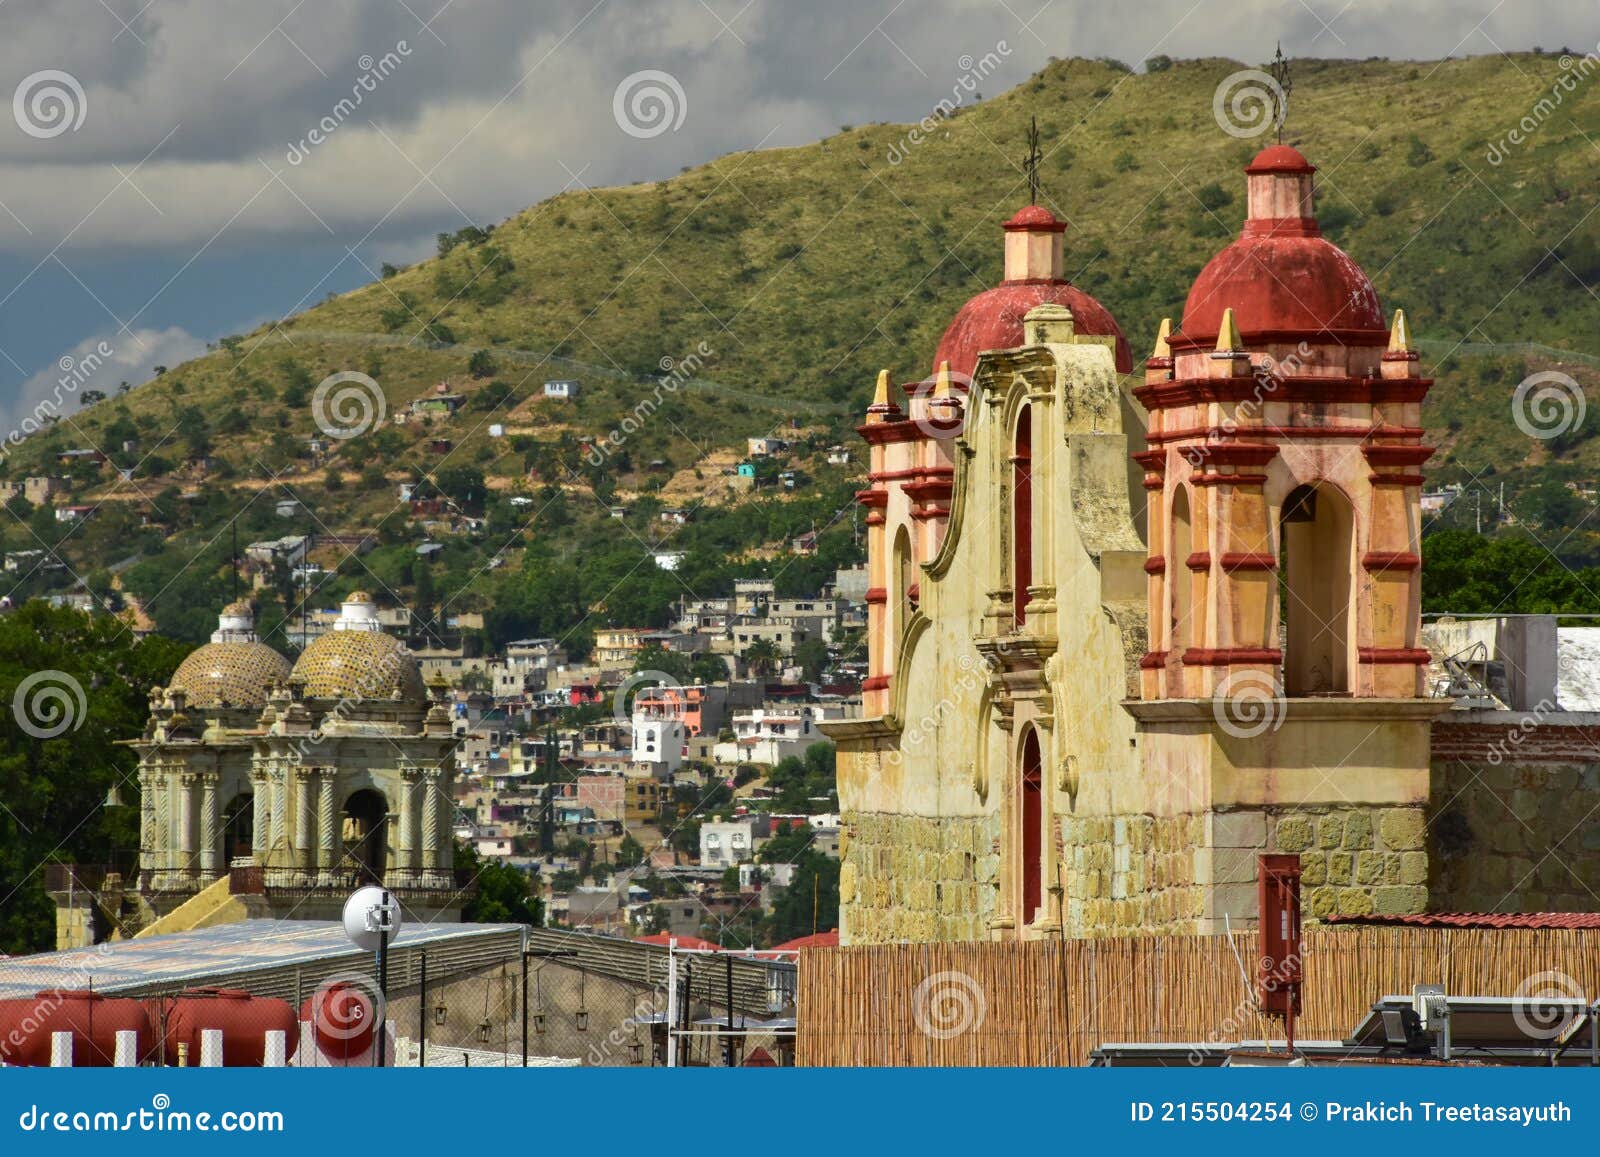 oaxaca de juÃÂ¡rez is the capital and largest city of the eponymous state in mexico